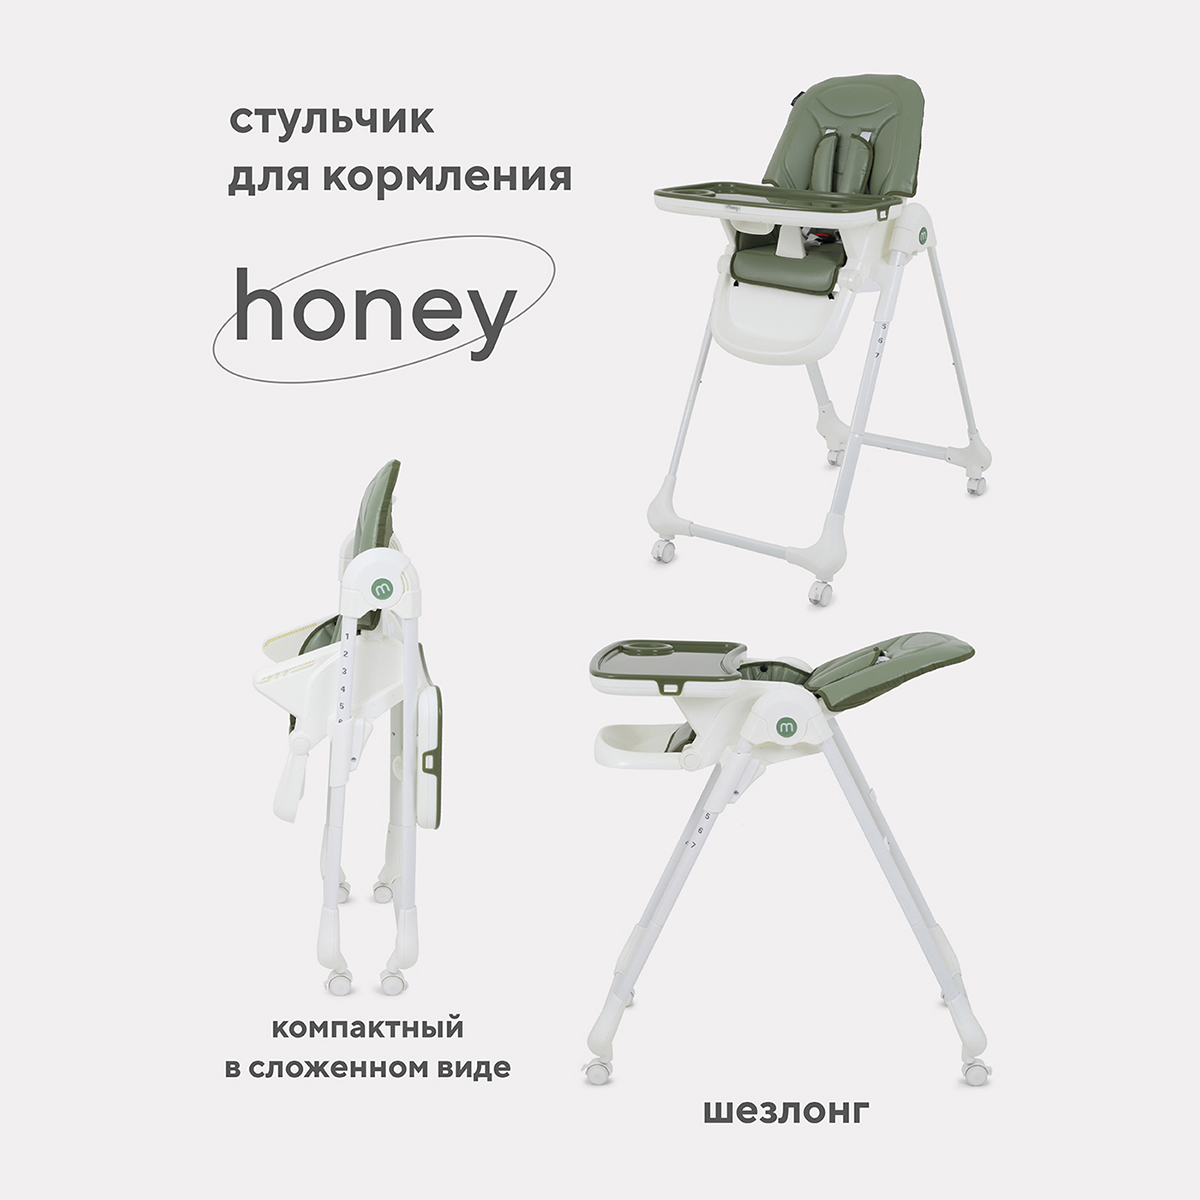 Стульчик для кормления MOWBaby HONEY от 6 месяцев RH600 green стульчик для кормления mowbaby honey beige